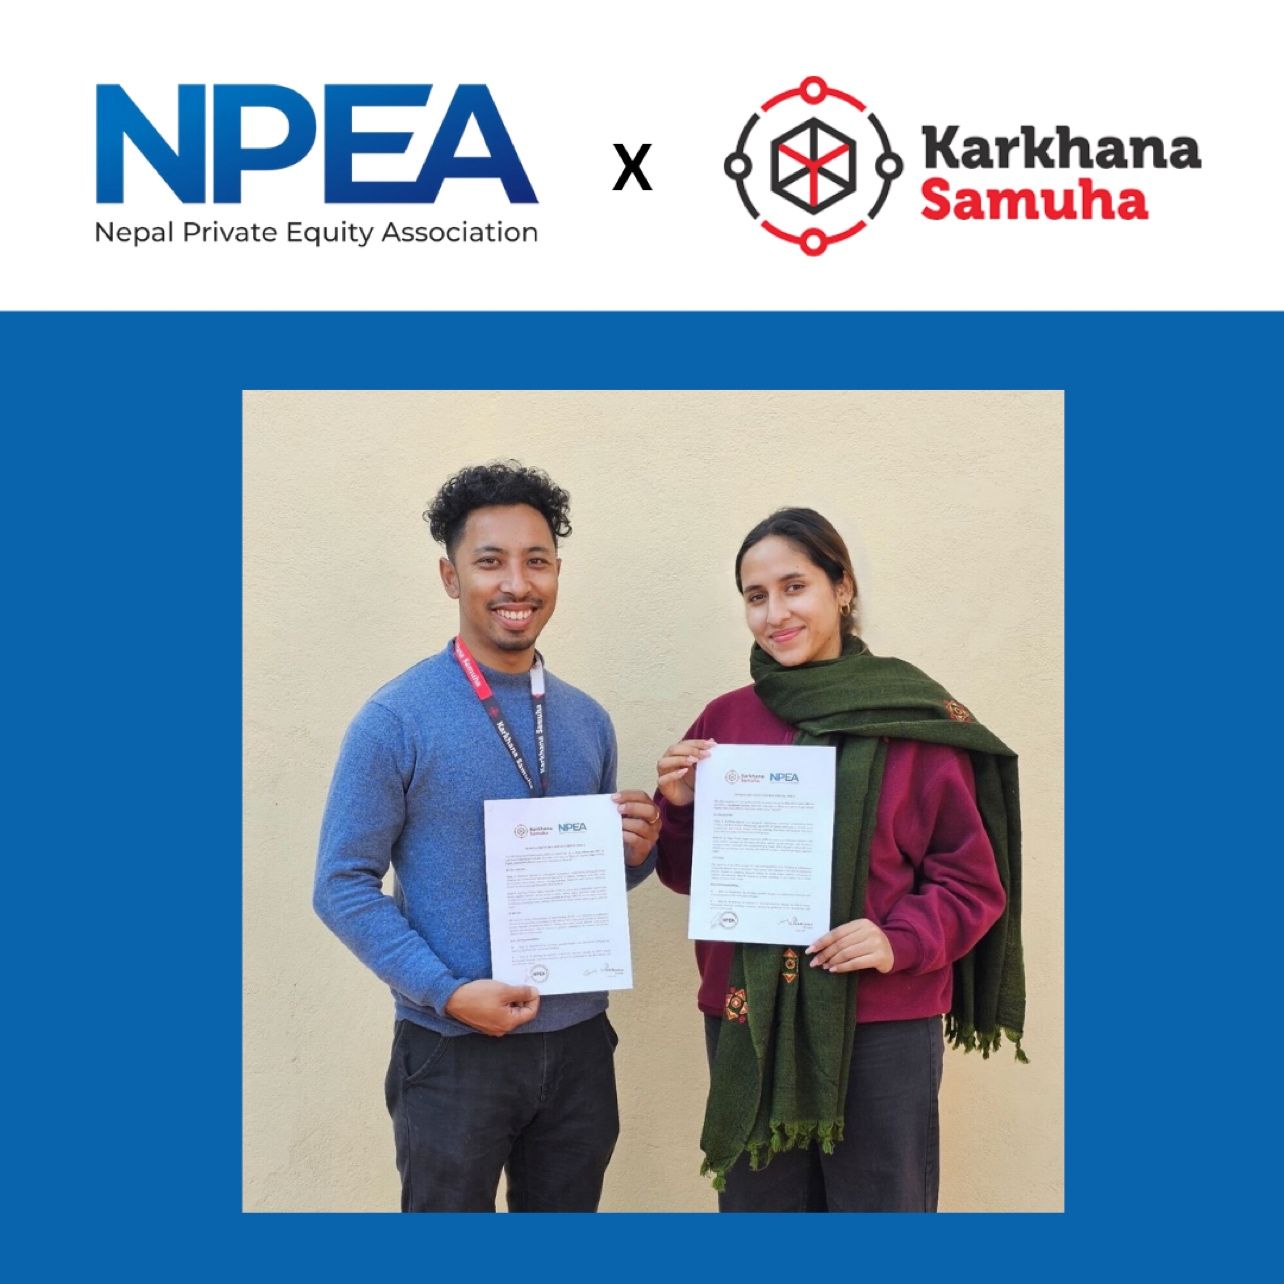 NPEA X Karkhana Samuha